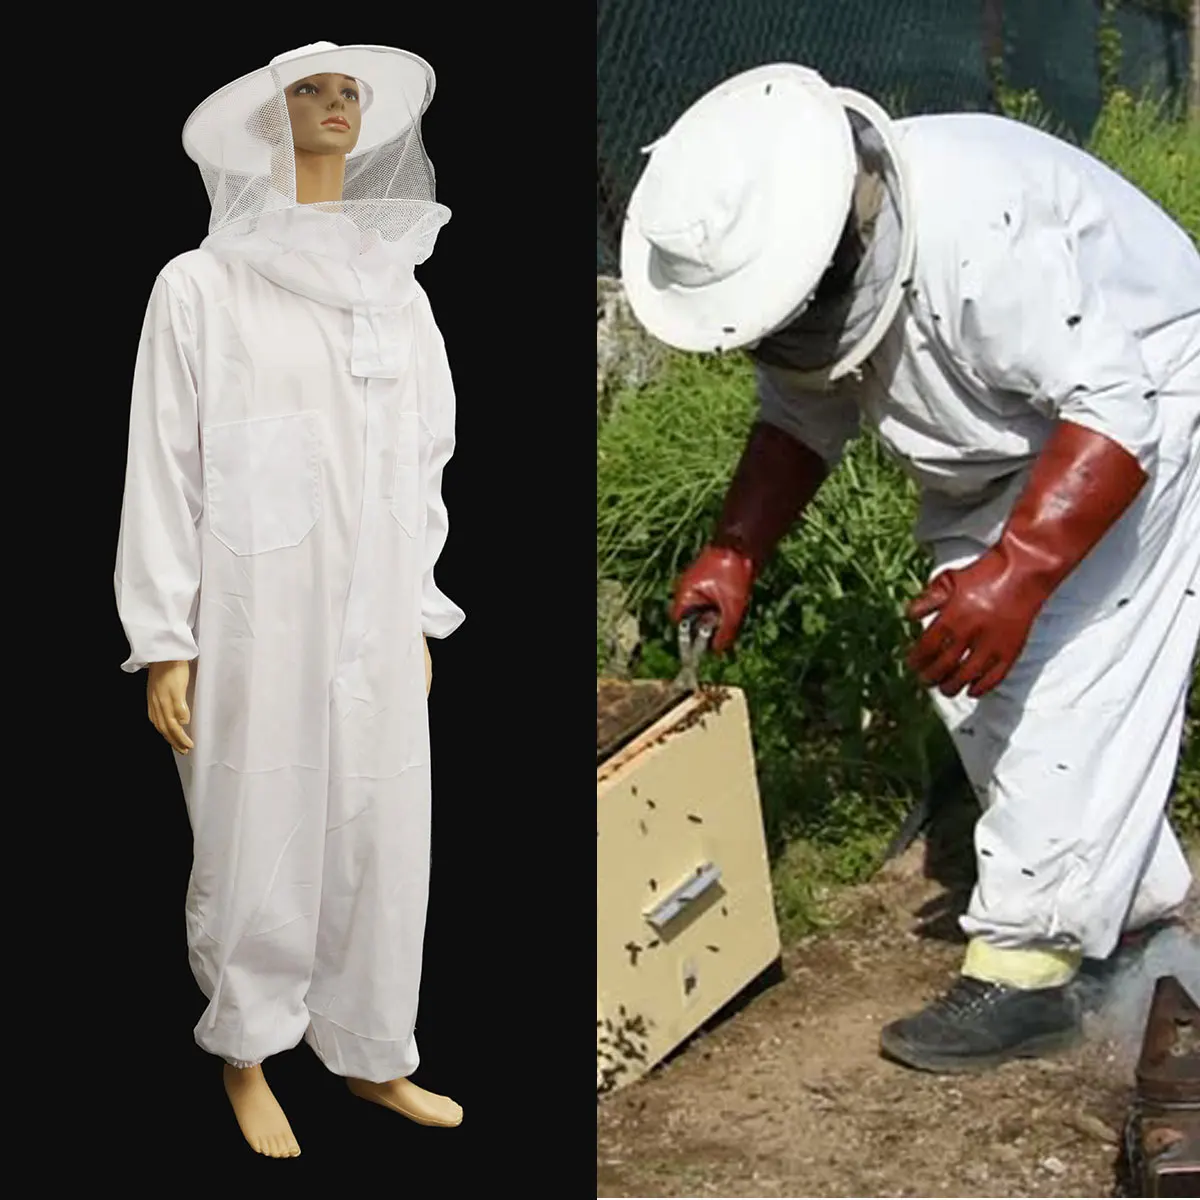 Защитное оборудование для пчеловодства, куртка, вуаль, профессиональный костюм для всего тела, шляпа, халат, набор инструментов для пчеловодства, платье, все оборудование для тела